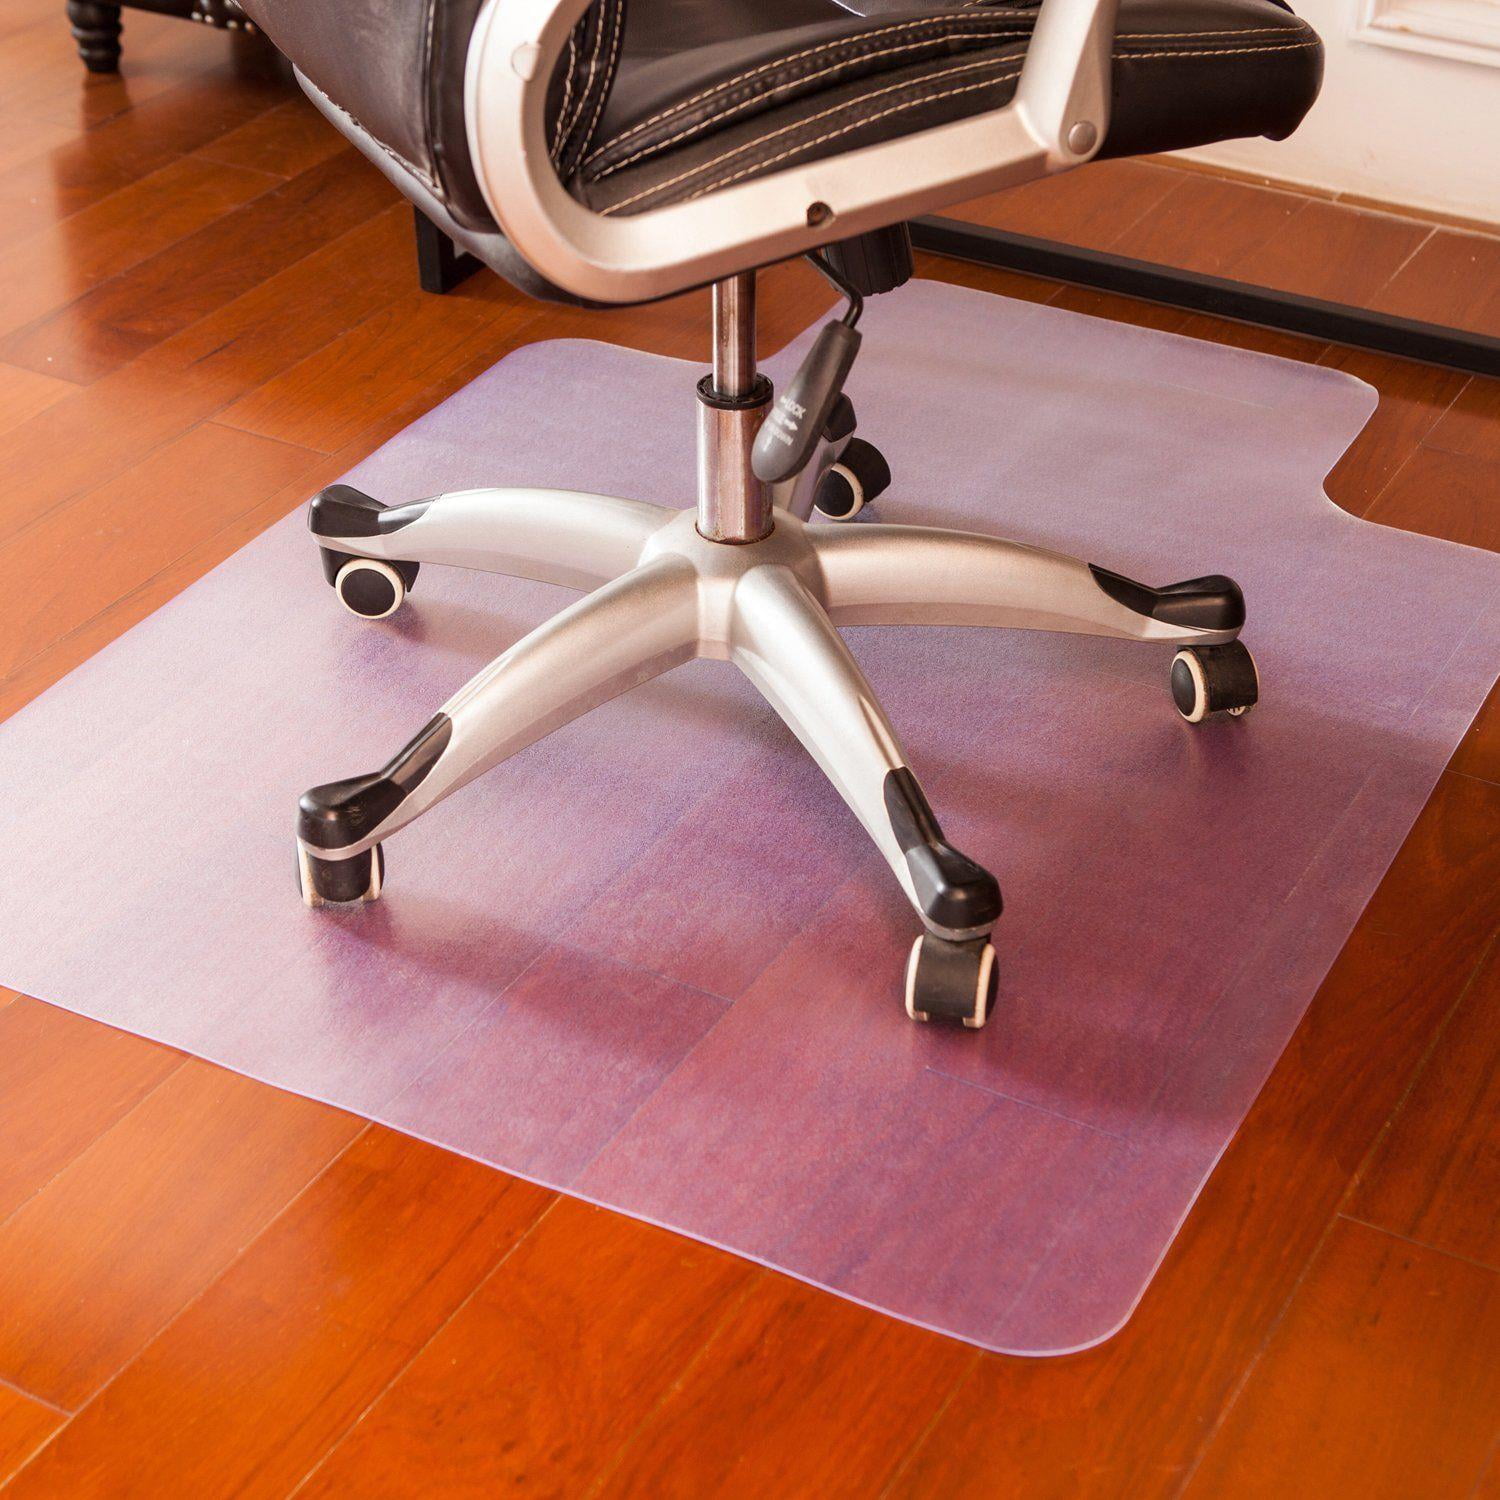 Ktaxon Office Chair Mat For Hardwood, Rug Or No Rug On Hardwood Floor